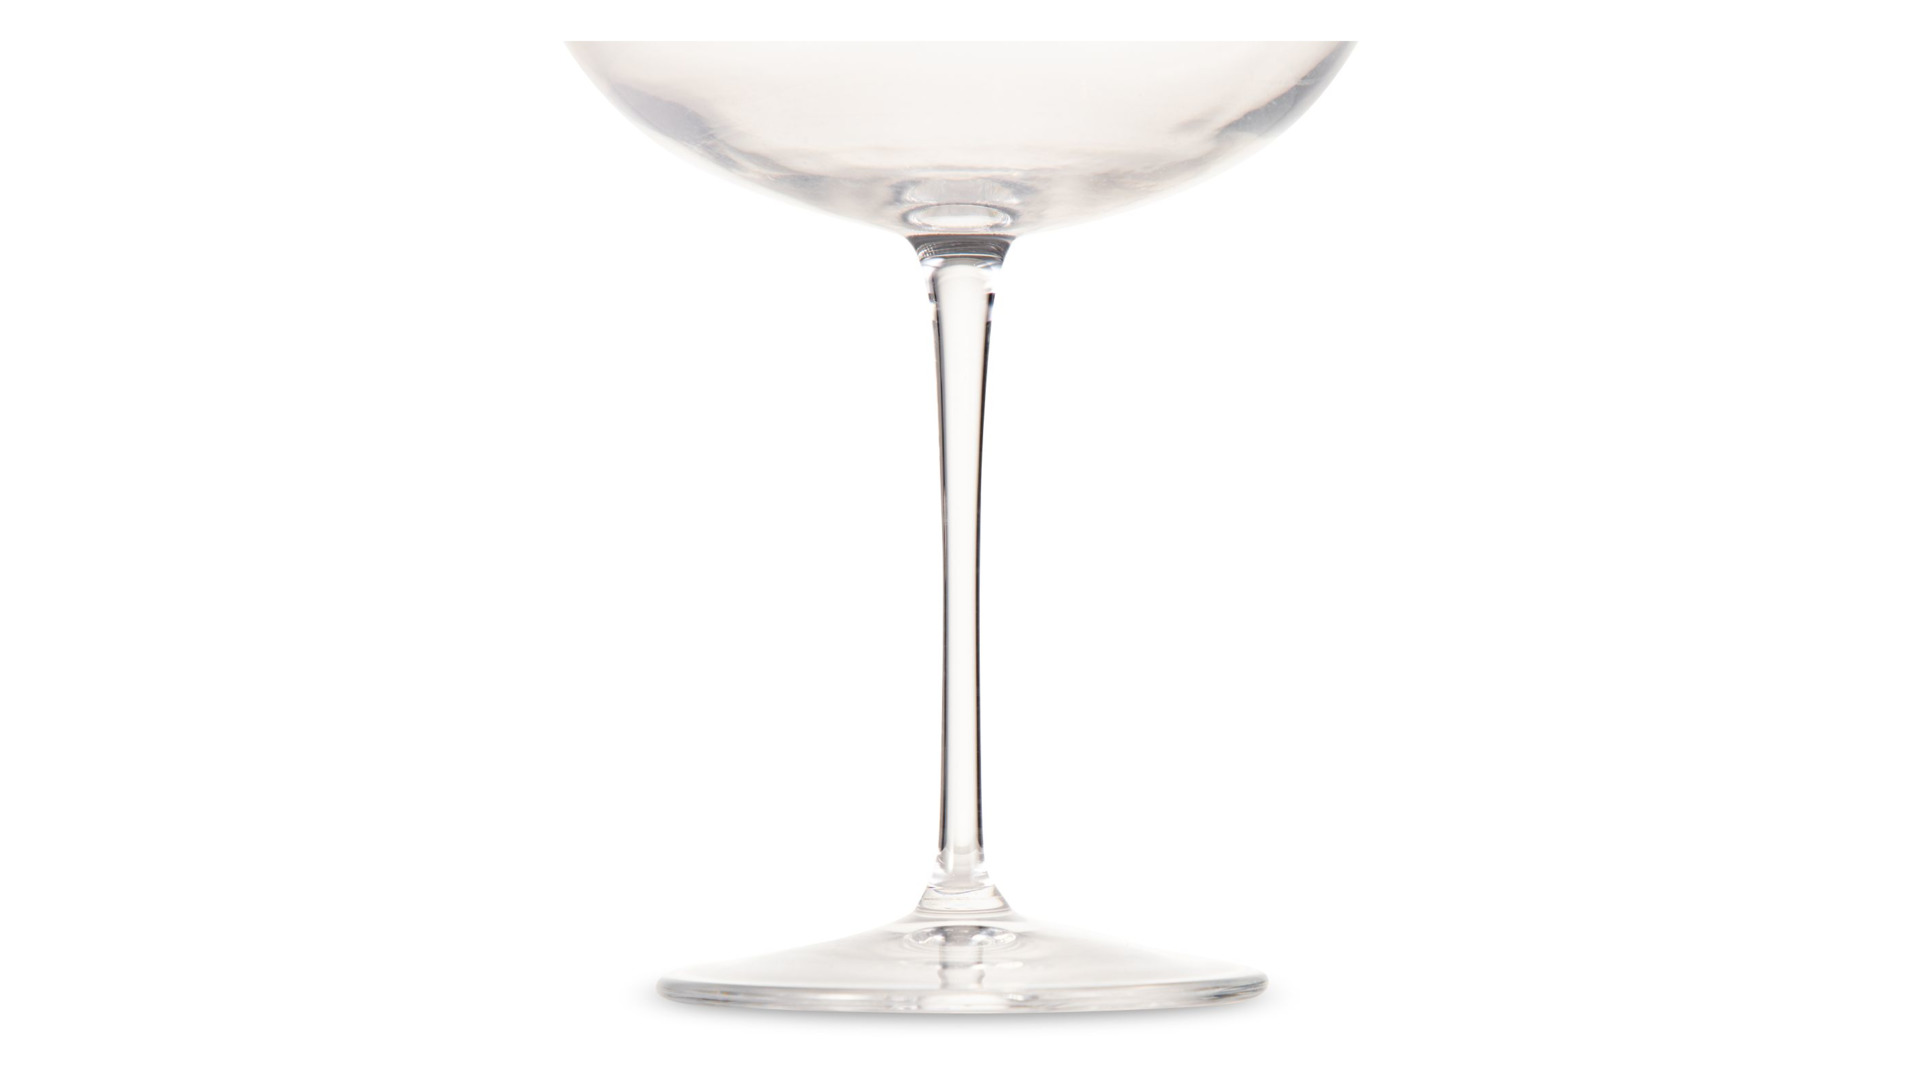 Креманка для шампанского и мартини Luigi Bormioli Талисман 300 мл, стекло хрустальное